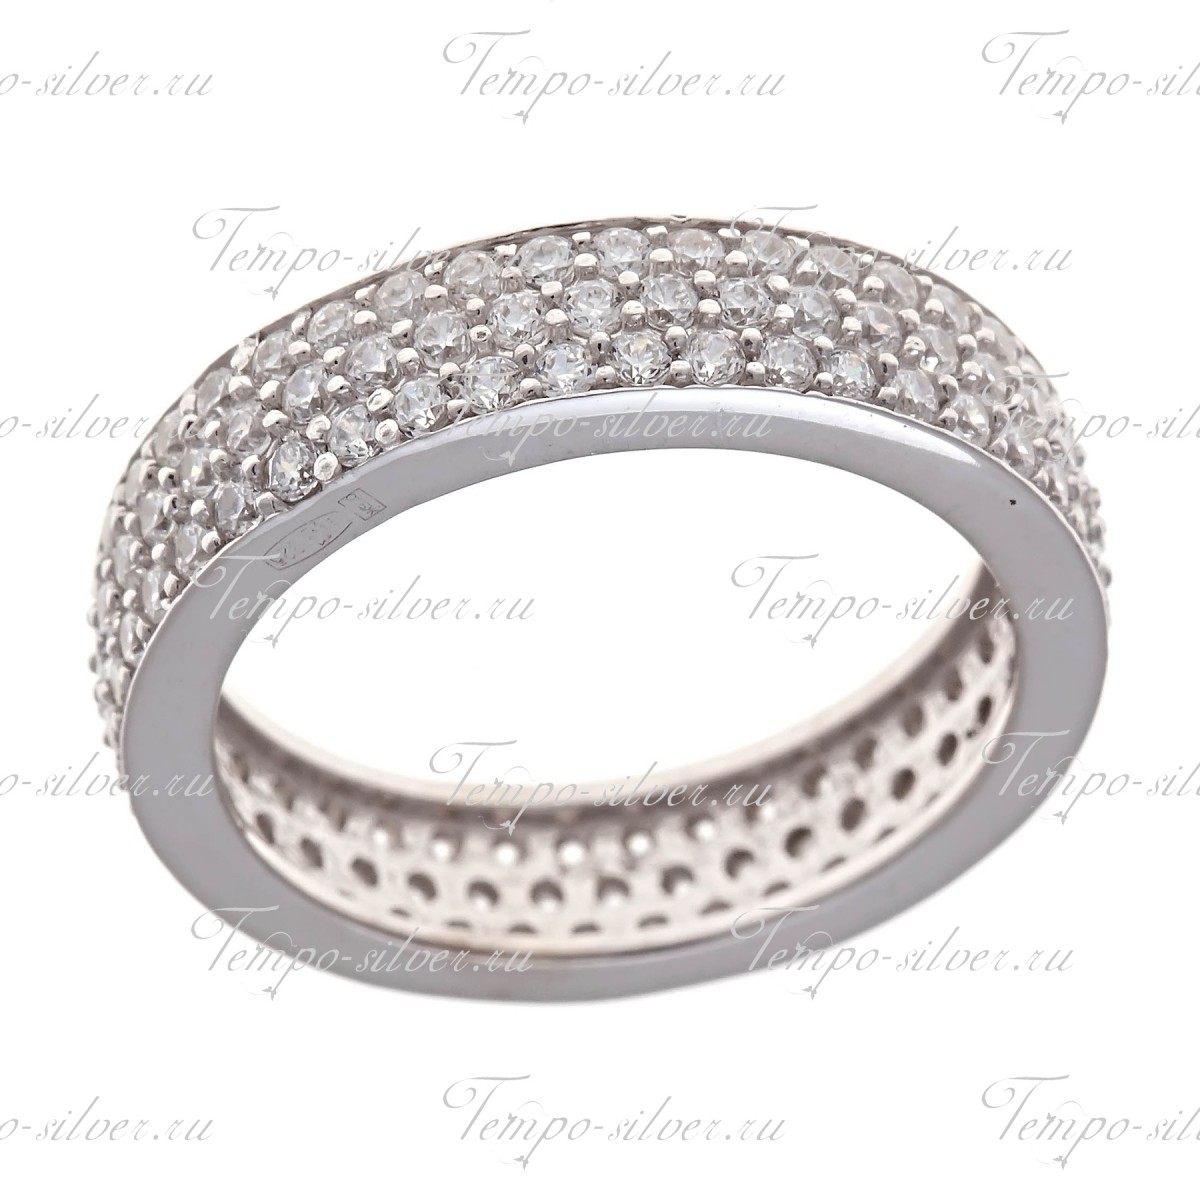 Кольцо из серебра обручальной формы, усыпанное тремя рядами белых камней цена